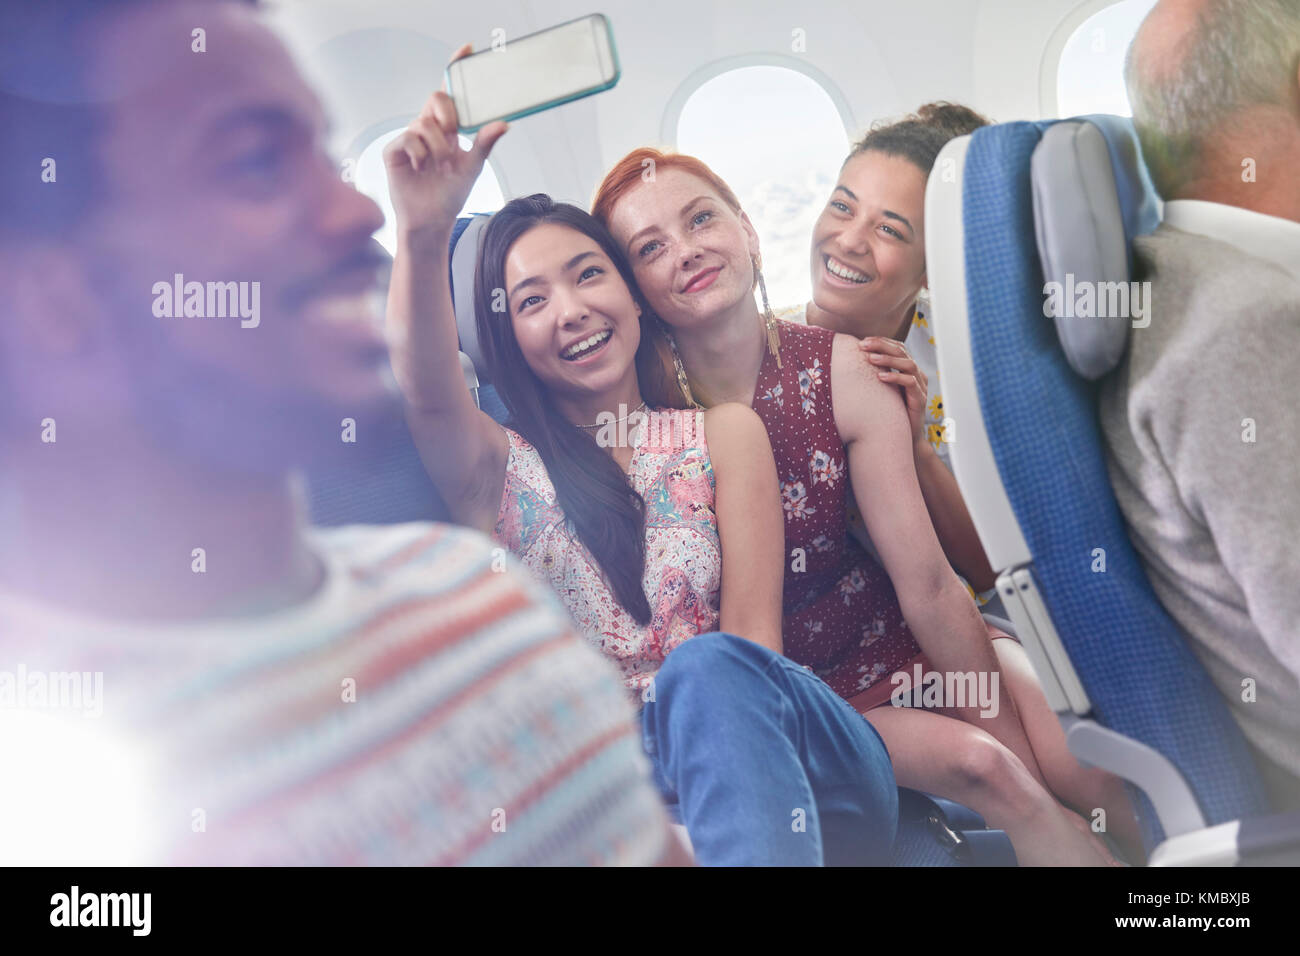 Giovani donne amici con fotocamera telefono che prende selfie in aereo Foto Stock